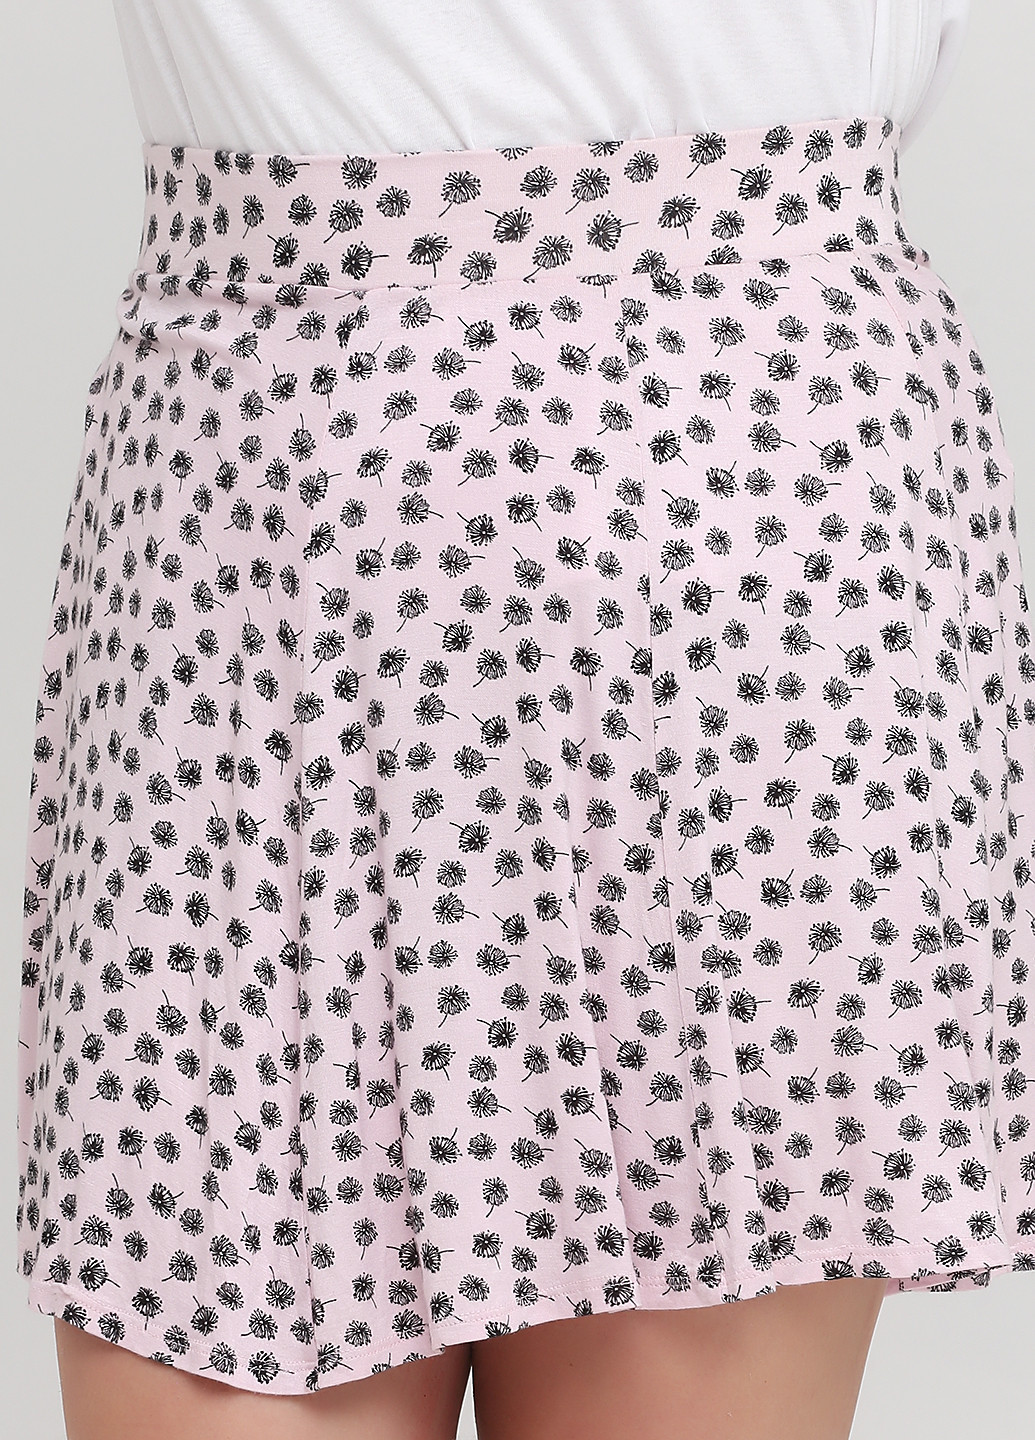 Светло-розовая кэжуал цветочной расцветки юбка C&A клешированная